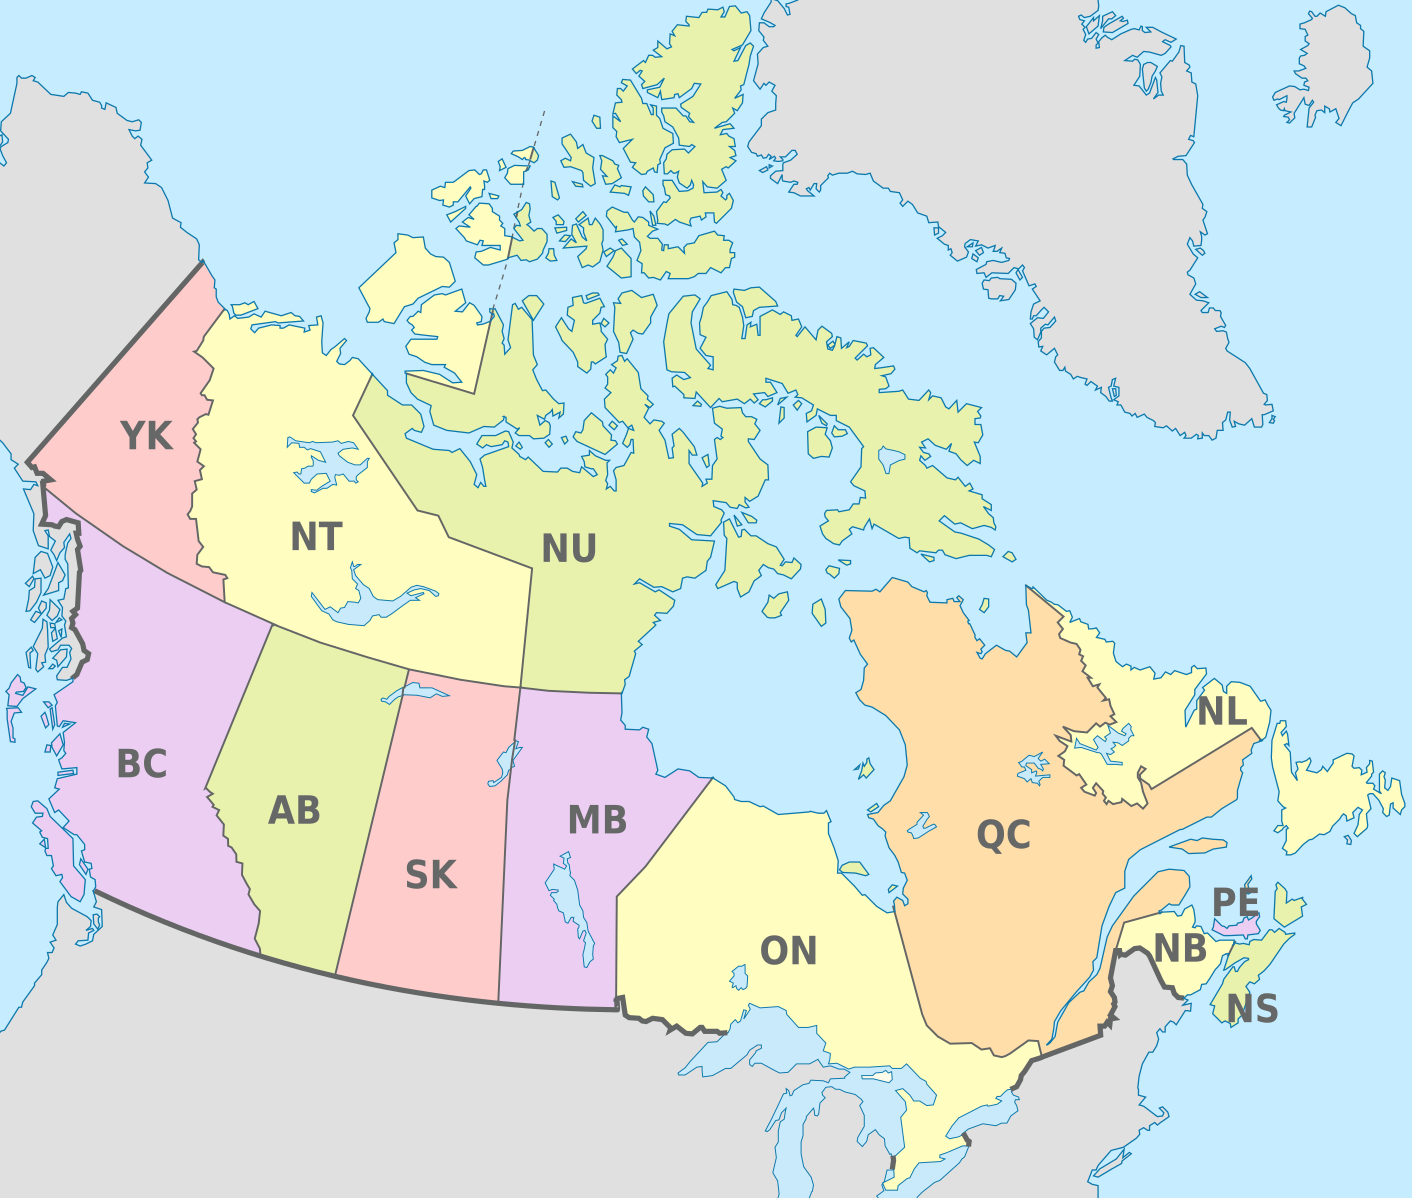 Карта канады с городами и провинциями